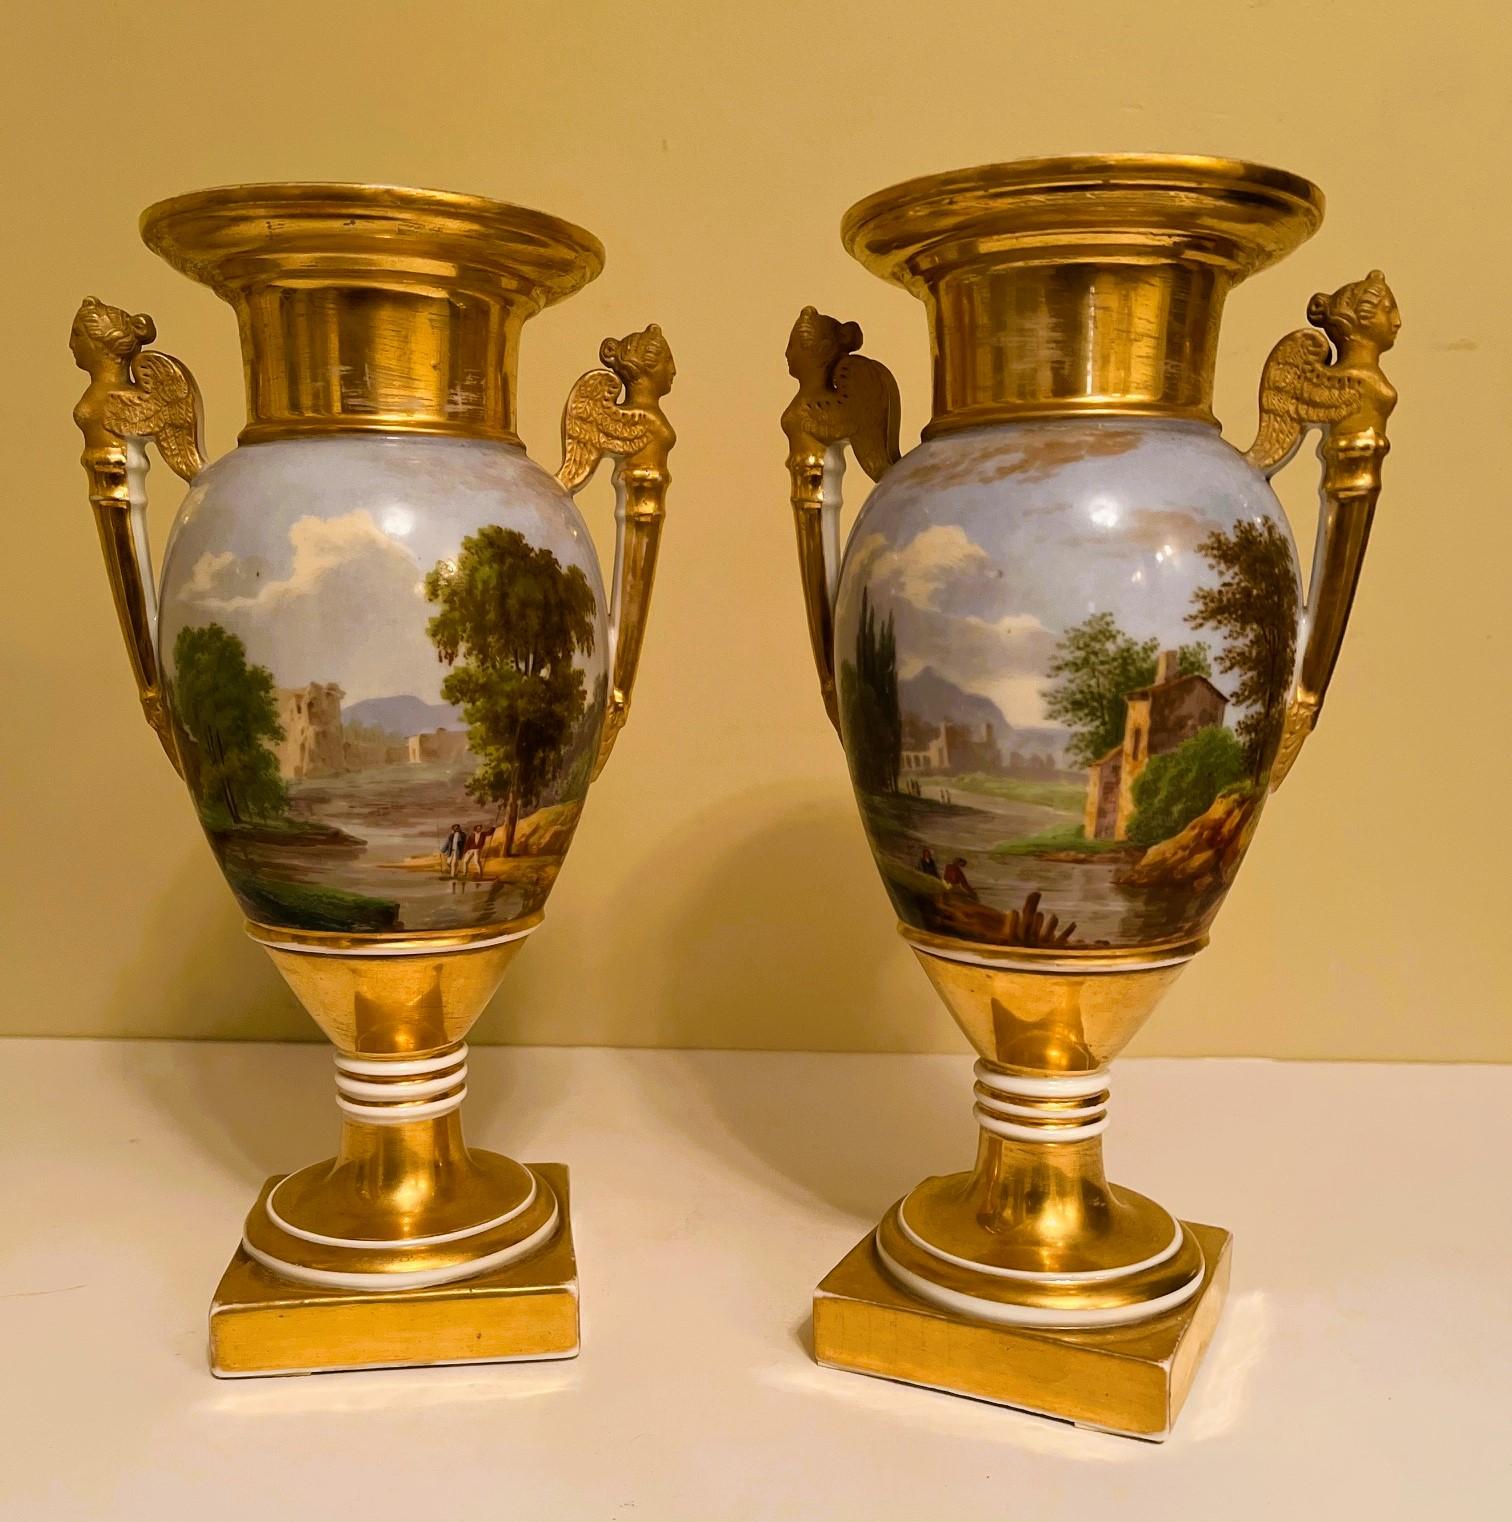 Il s'agit d'une paire exceptionnelle de vases du Vieux Paris avec de magnifiques scènes panoramiques peintes à la main. Les scènes bucoliques montrent des personnes habillées à la mode qui se promènent avec des vaches au bord d'un ruisseau sinueux,